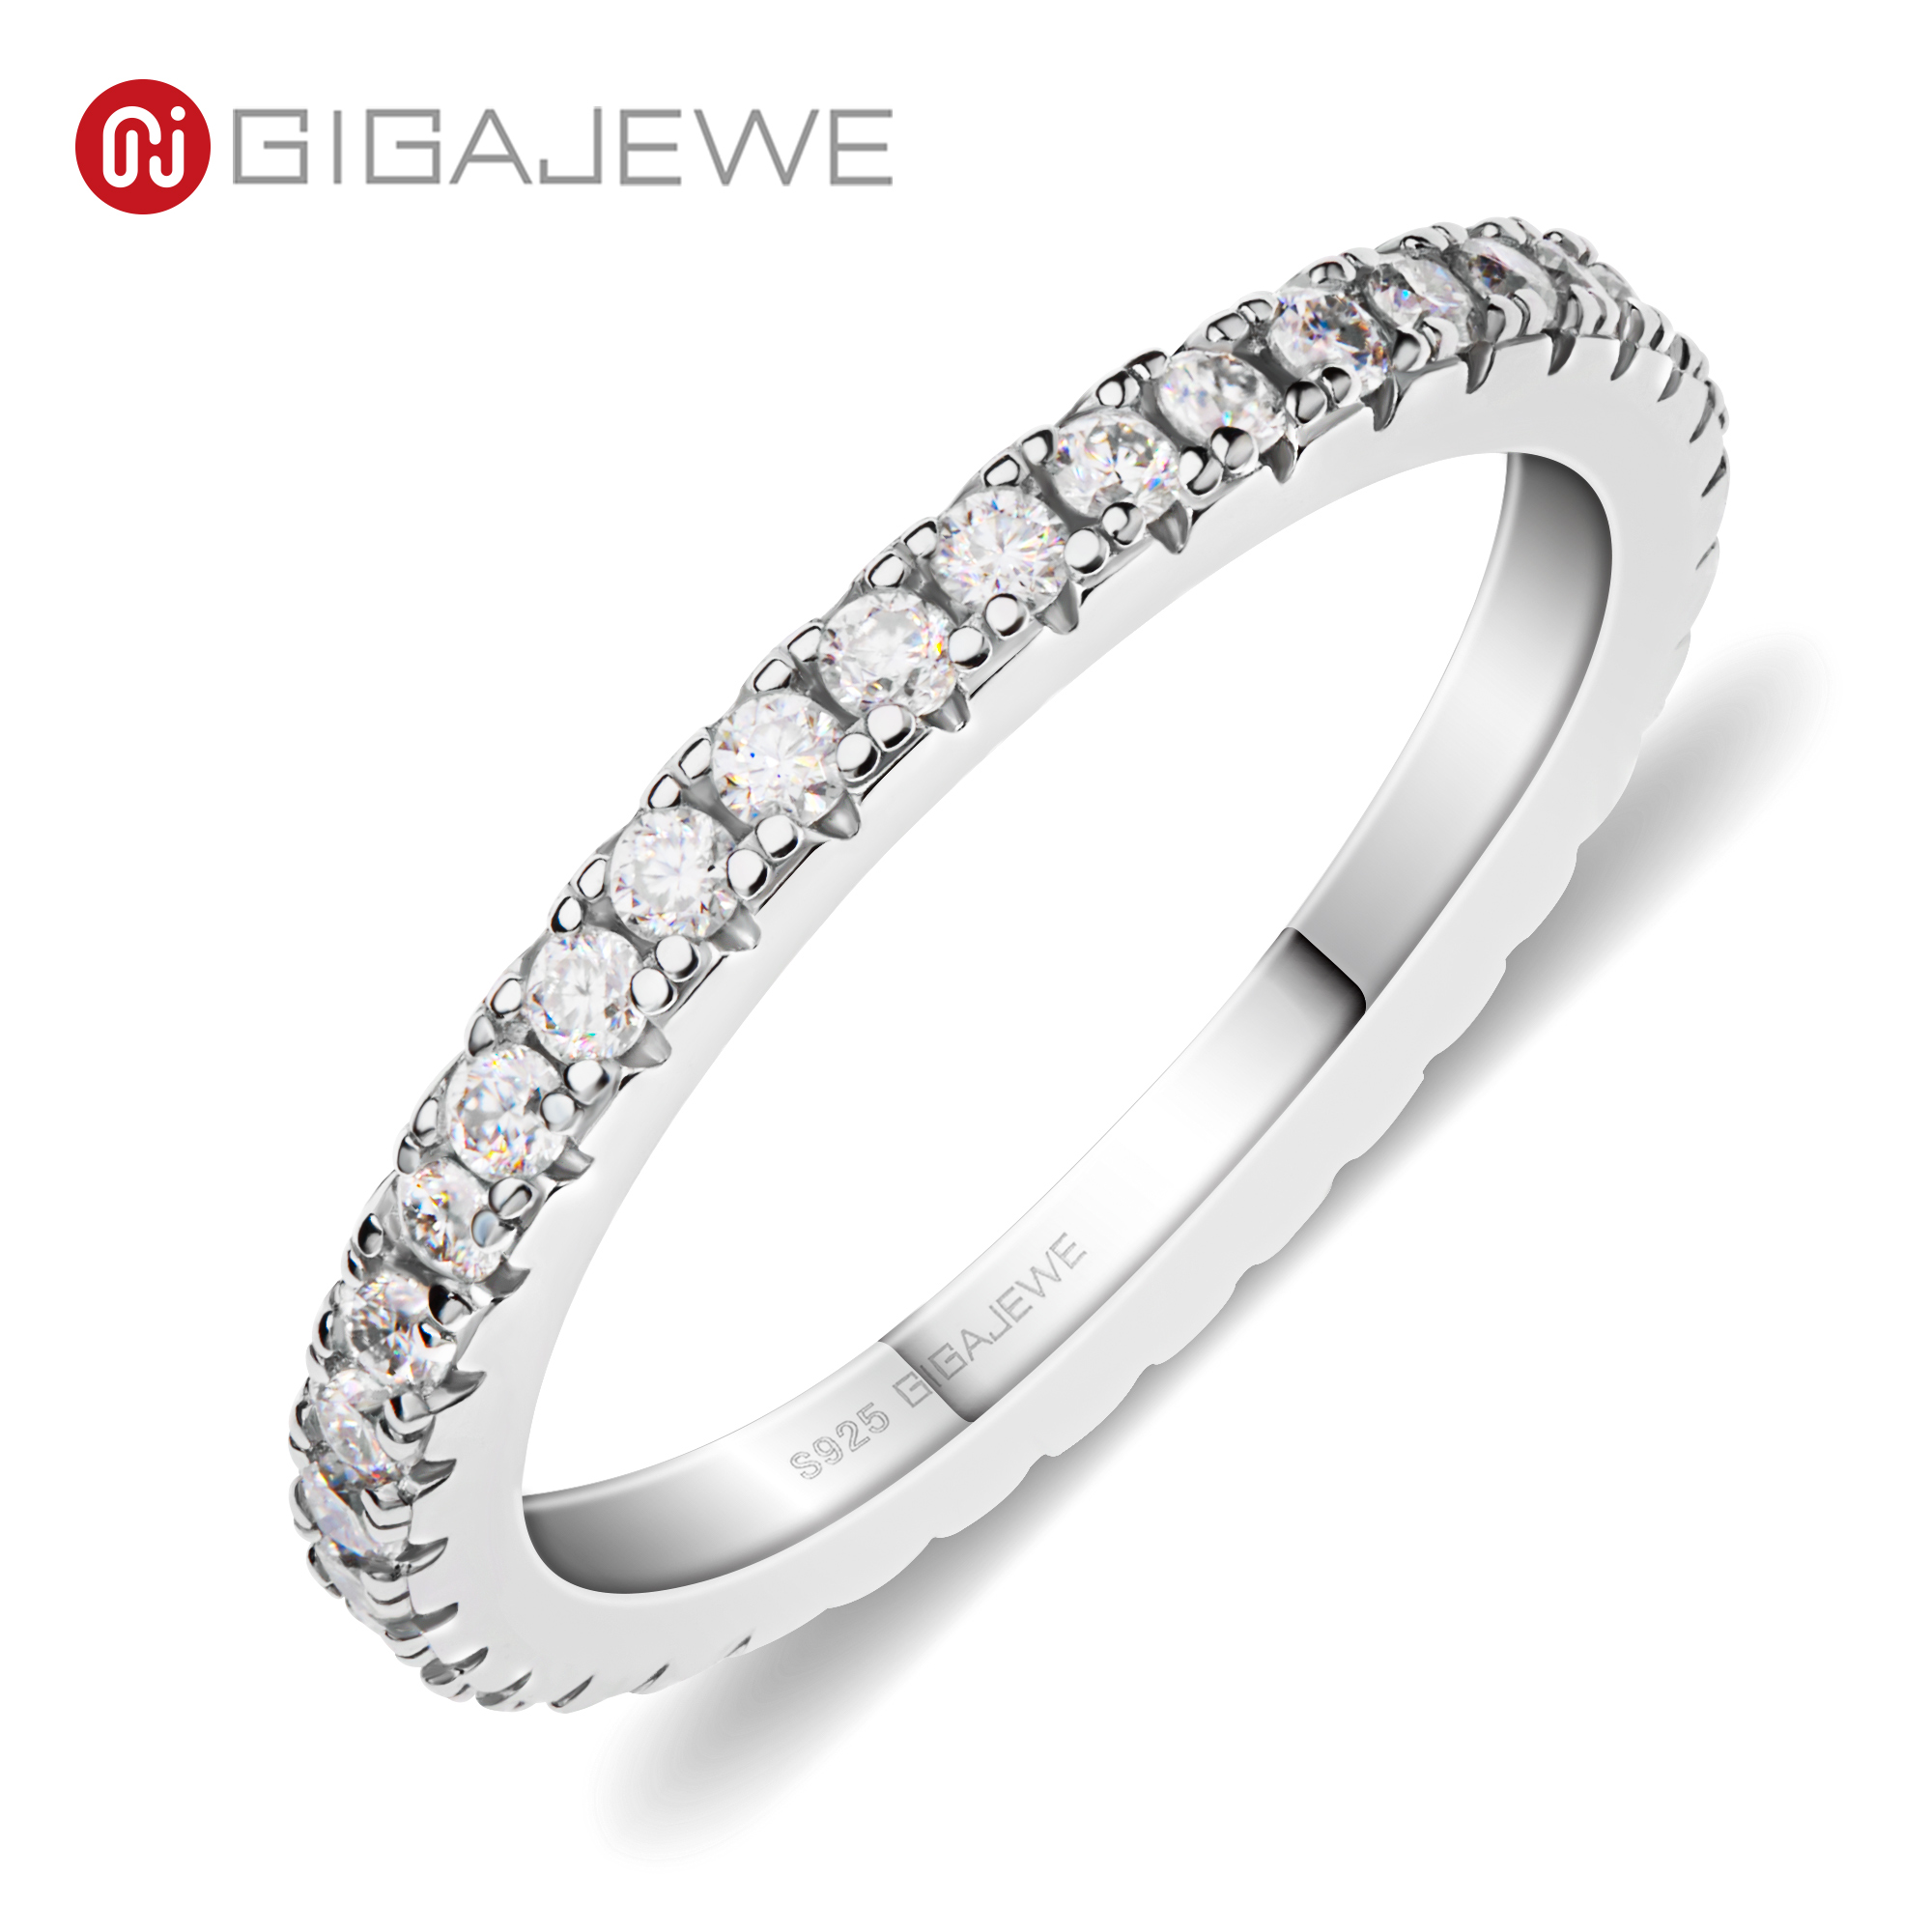 GIGAJEWE 莫桑石 1.5 毫米圆形切割白色 D VVS1 925 银全款戒指钻石测试通过时尚女士女孩礼物